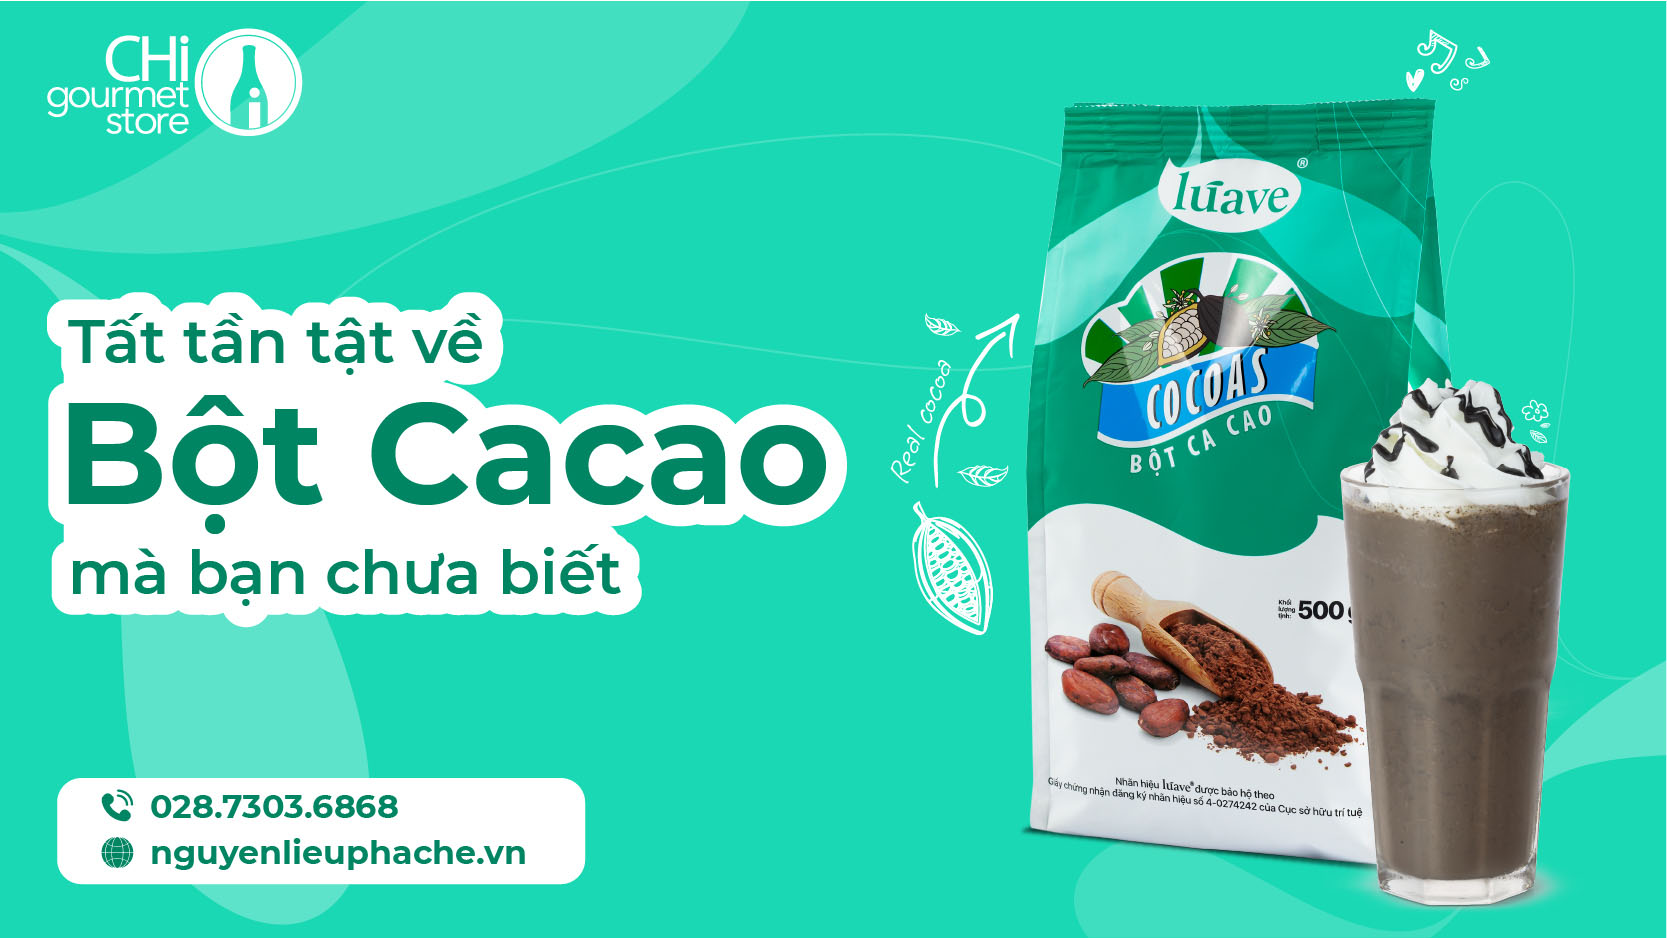 Tất tần tật về bột cacao - Bạn đã biết hay chưa?